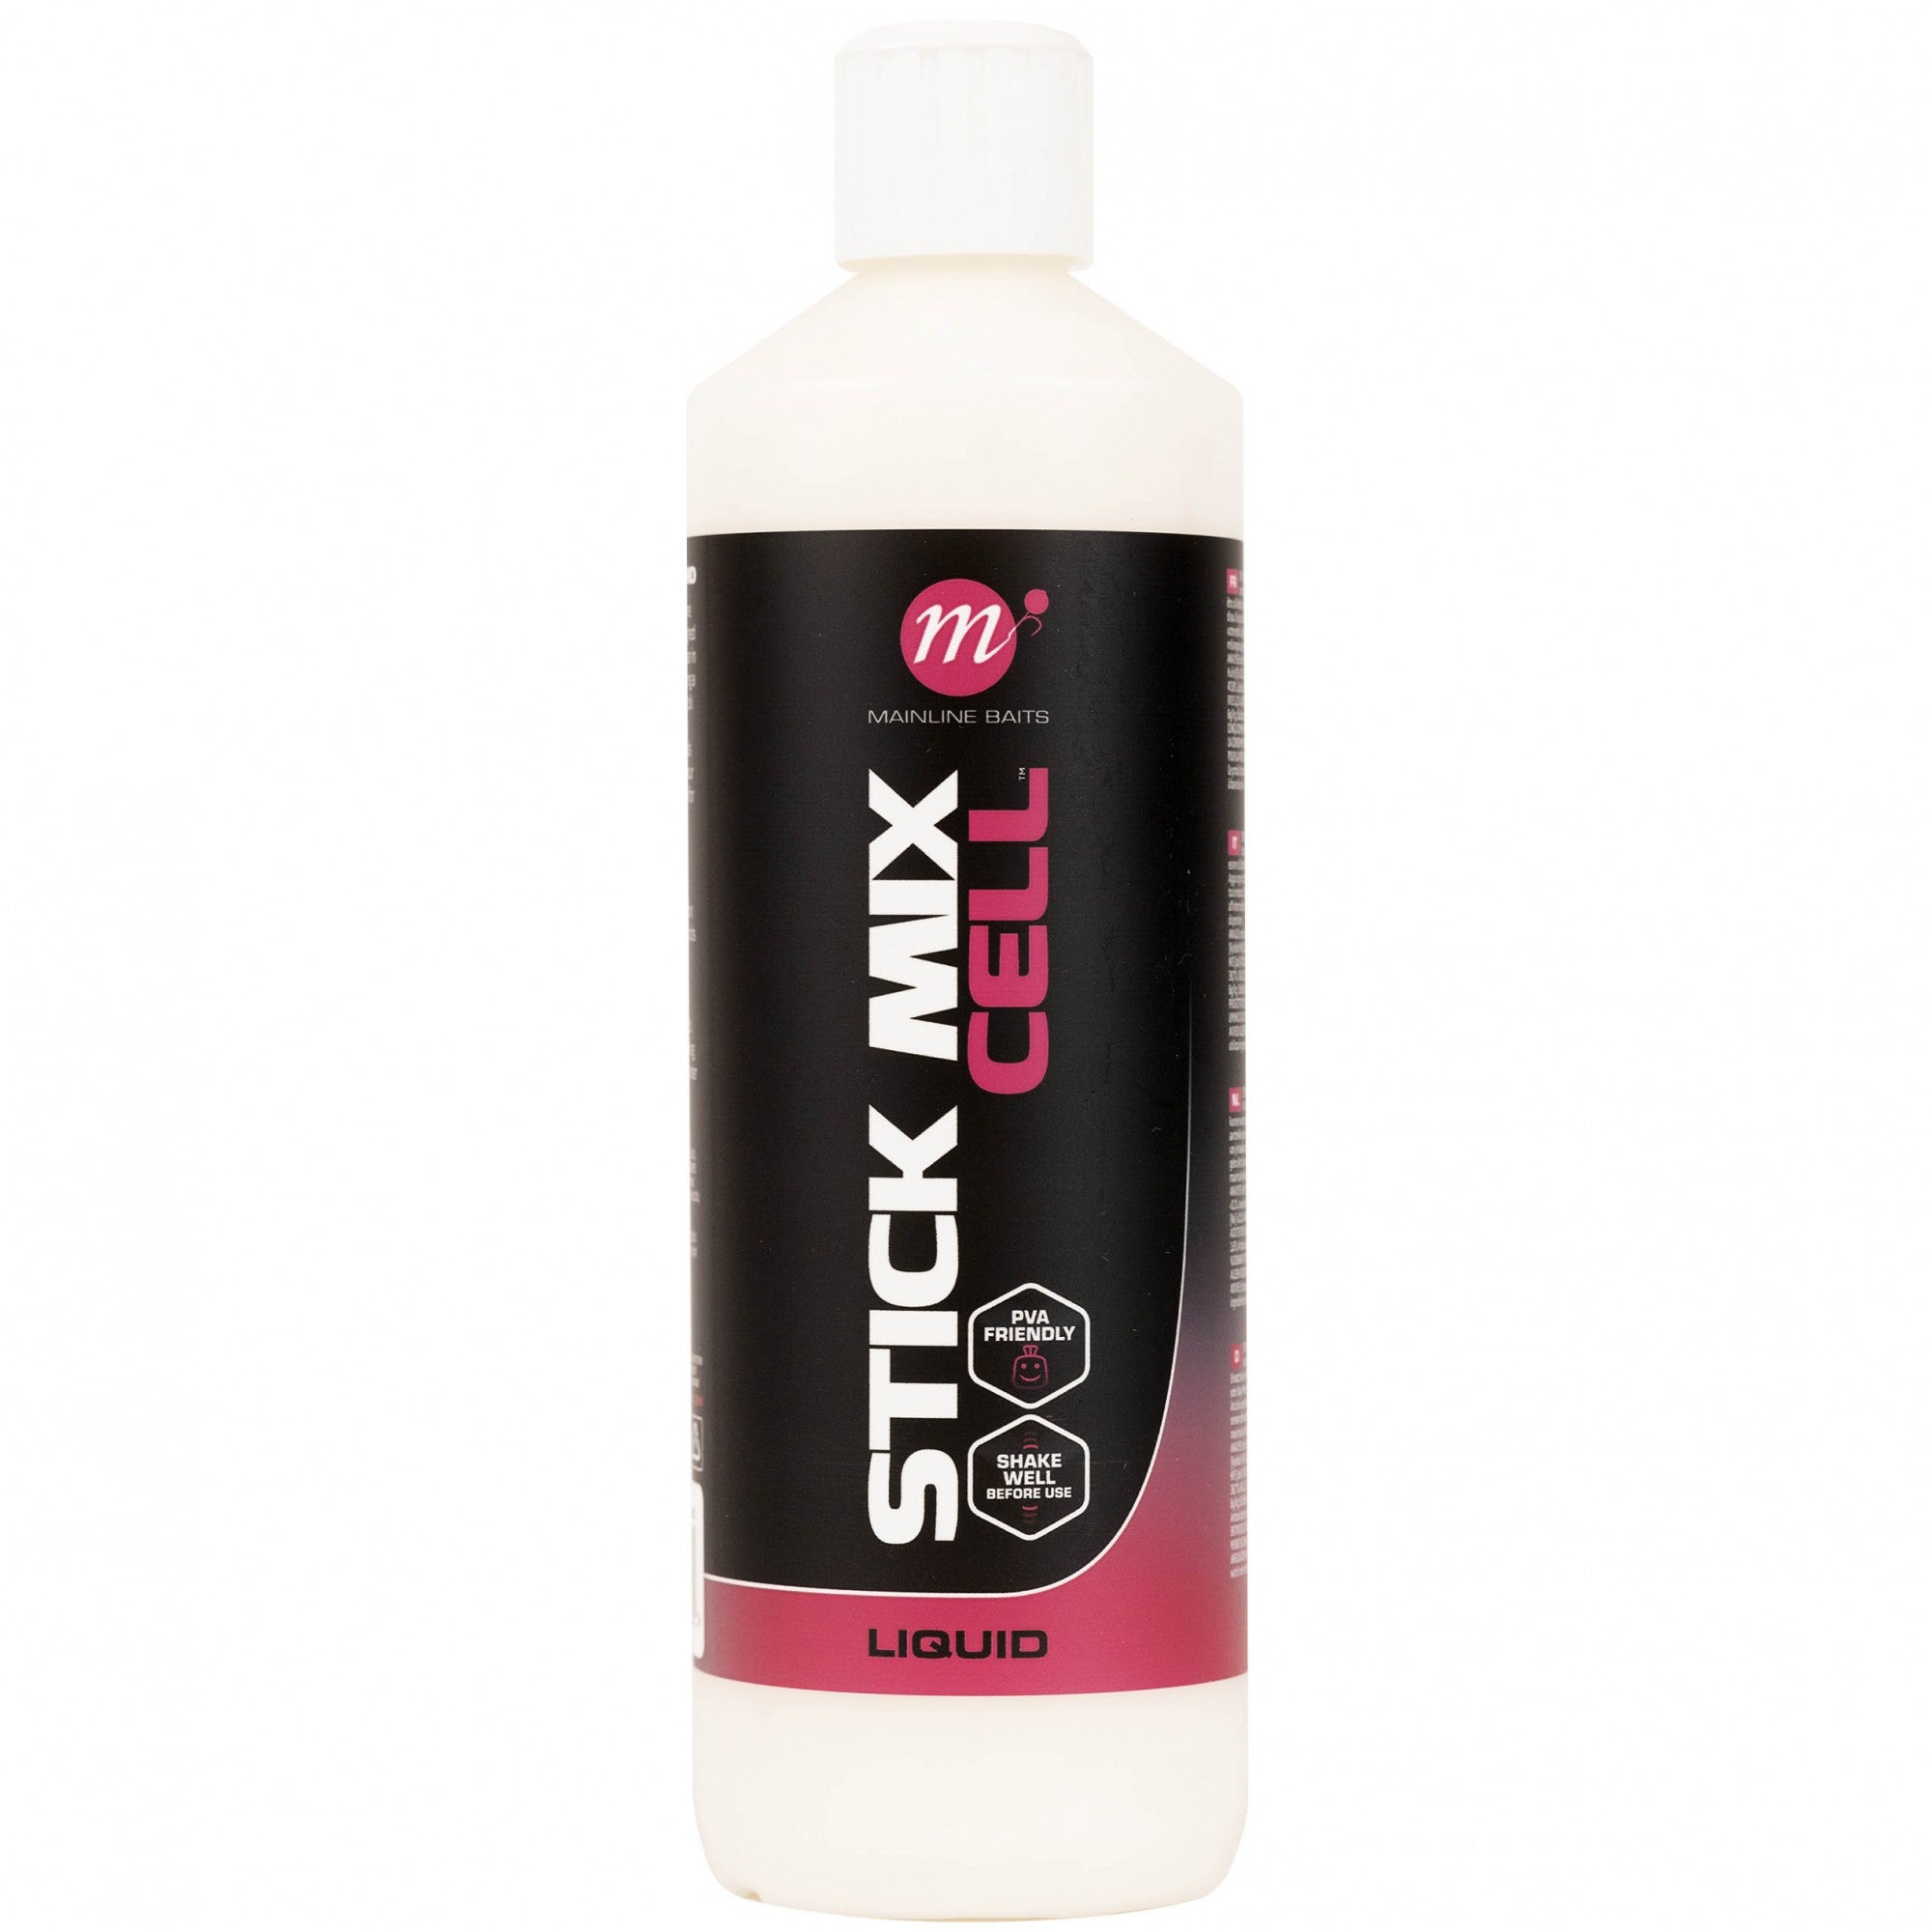 Mainline Stick Mix Liquid Cell 500ml